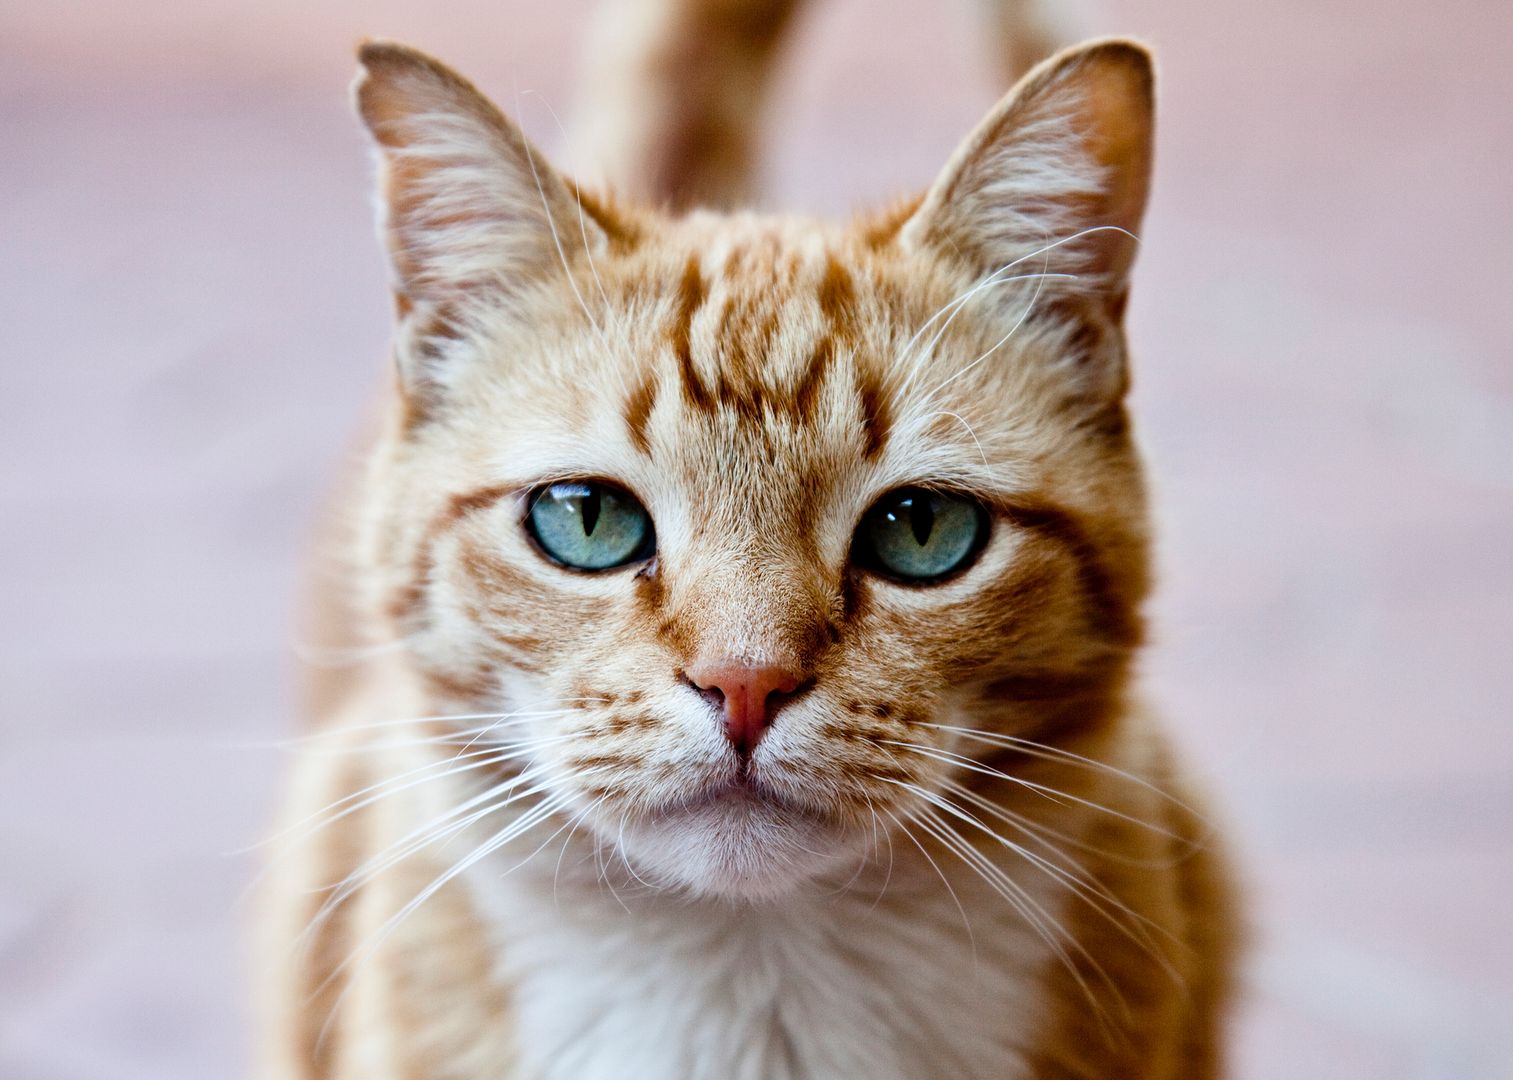 Koronawirus. Weterynarze zalecają trzymać koty w domu. Mogą się zakazić